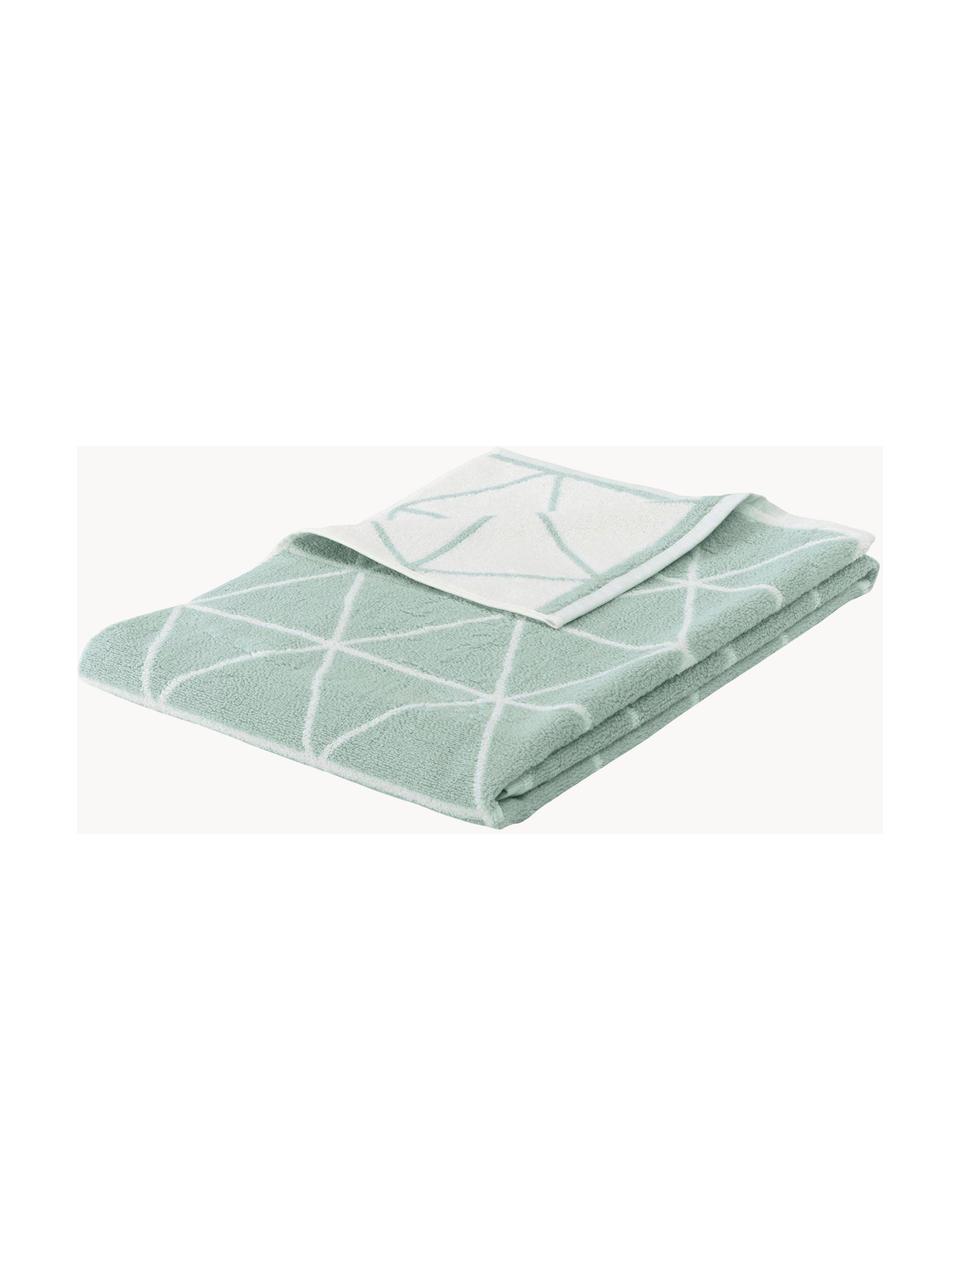 Asciugamano reversibile con motivo grafico Elina 2 pz, 100% cotone,
qualità media 550 g/m², Verde menta, bianco crema, Asciugamano per ospiti, Larg. 30 x Lung. 50 cm, 2 pz